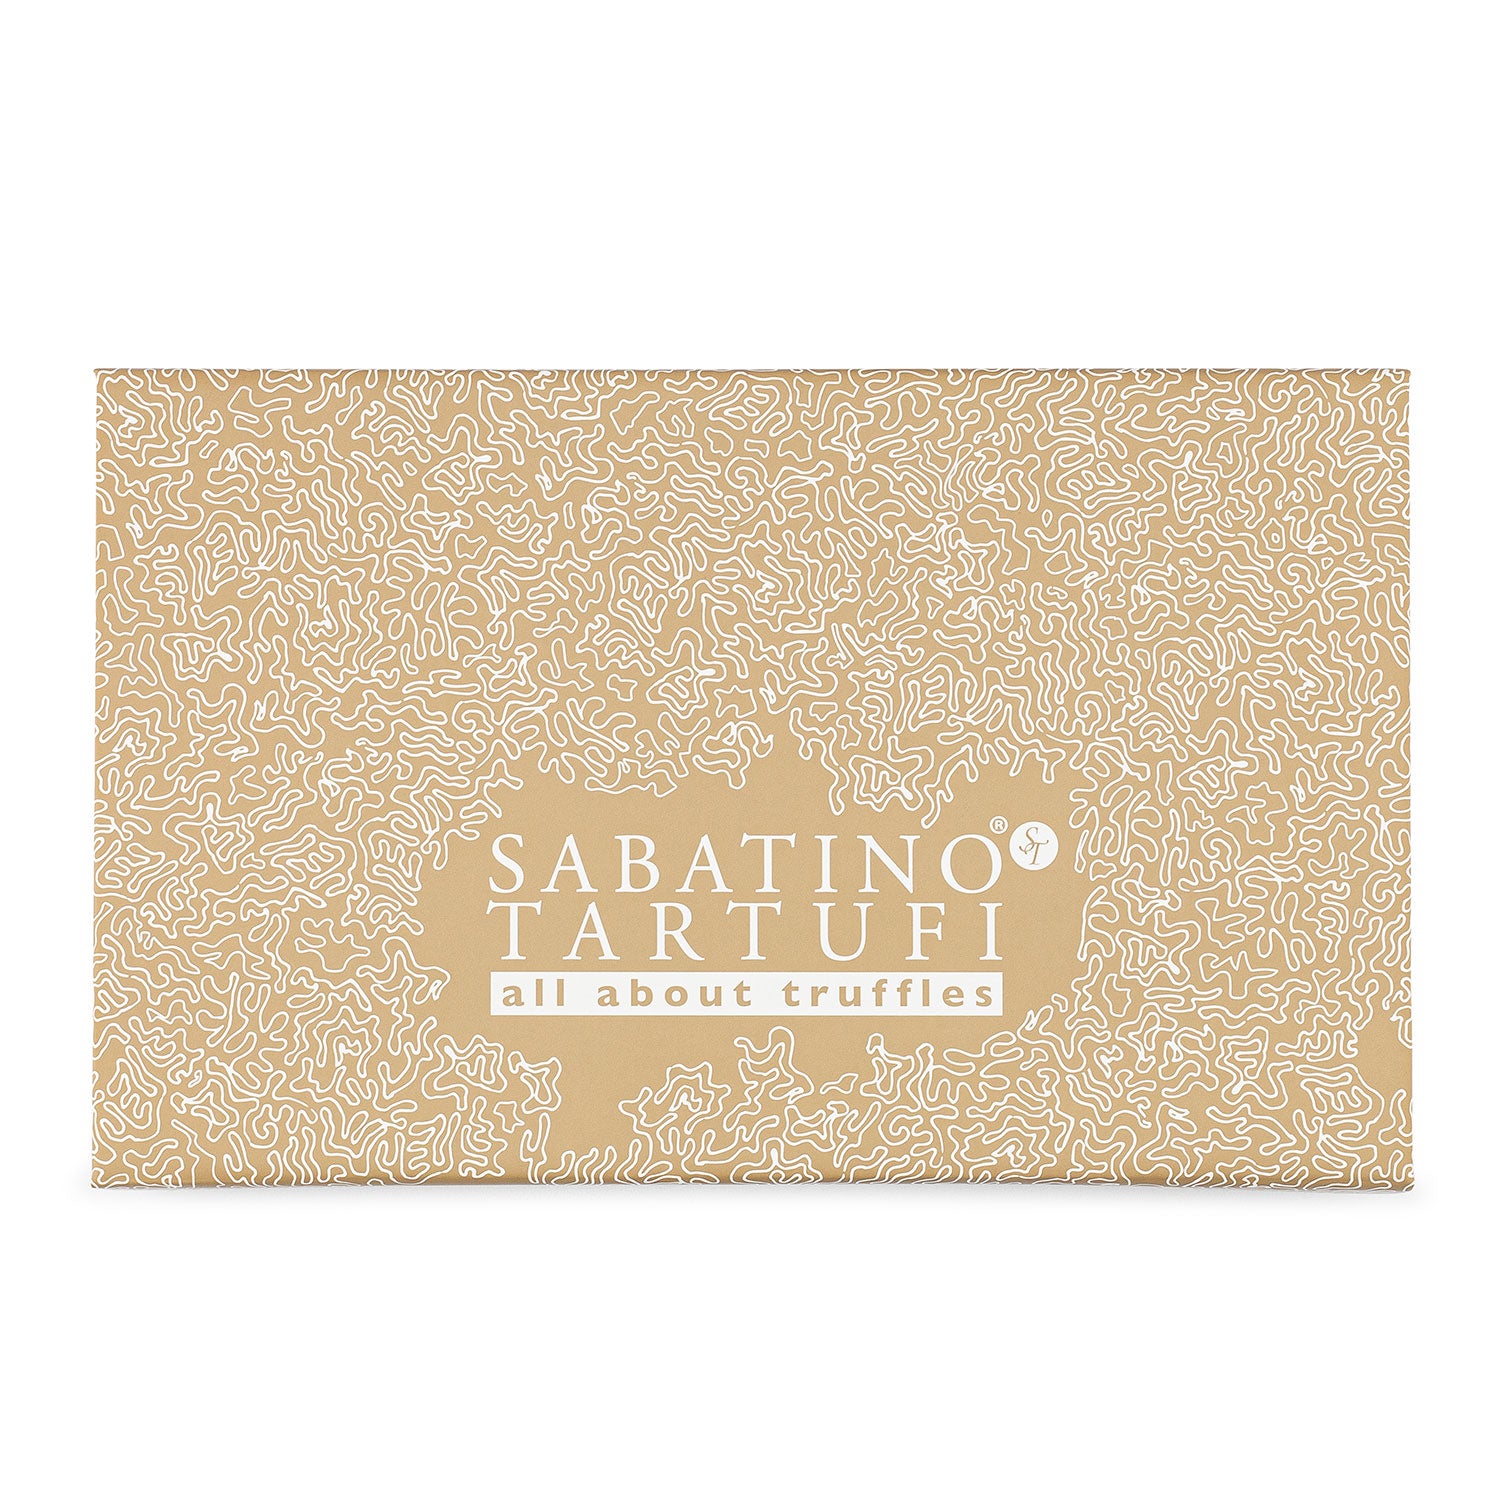 Sabatino Truffle Seasoning Collection - Oprah's Favorite Things 2017 - Sabatino Truffles